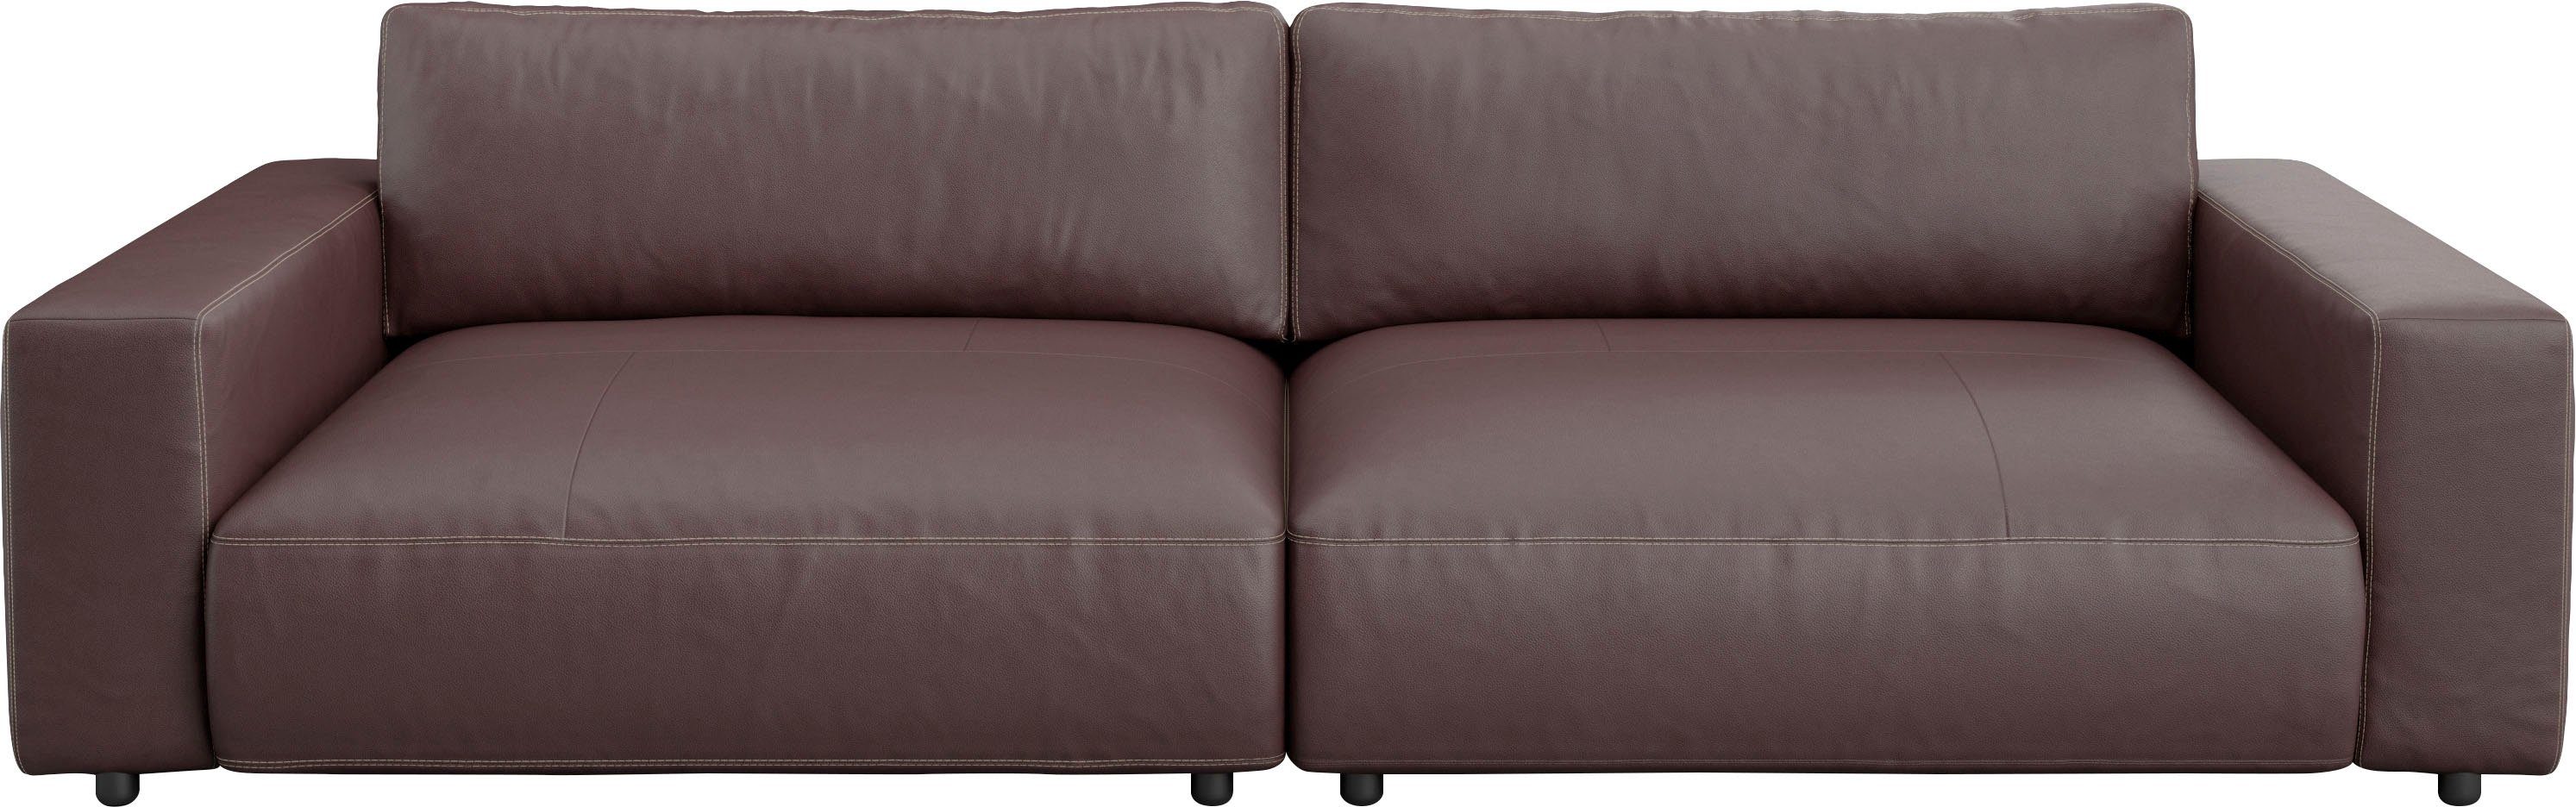 Qualitäten M Musterring vielen Nähten, unterschiedlichen by GALLERY LUCIA, branded Big-Sofa 2,5-Sitzer 4 und in